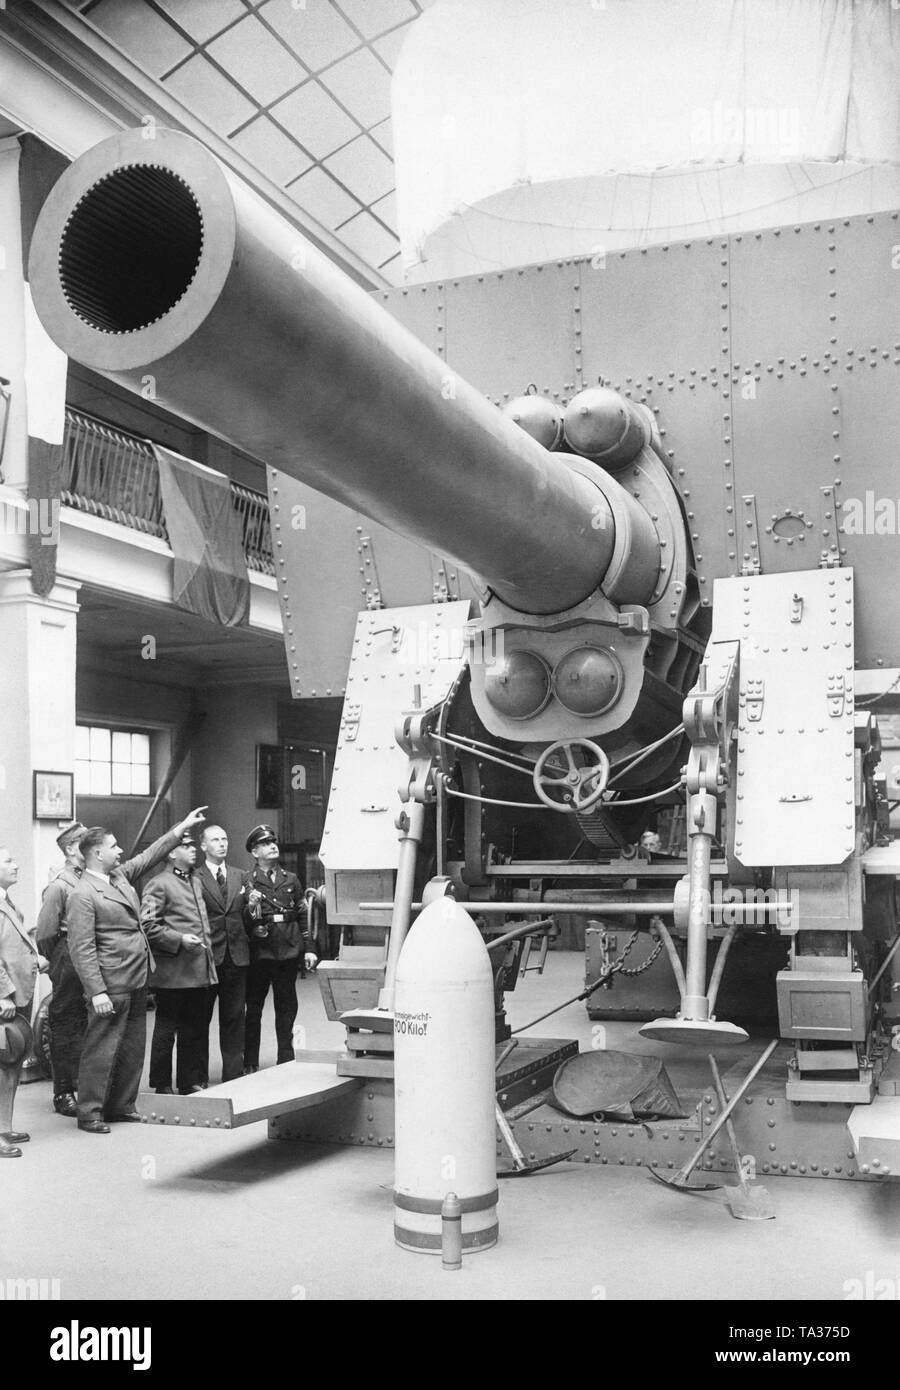 Foto ein Modell der Mörtel cannon 'Dicke Bertha' der Krupp Sorge aus dem Ersten Weltkrieg in der Ausstellung 'Die Front' ('Vorne') im Zeughaus in Berlin. Der 42 cm Haubitze Kaliber 12 L/16" oder "Gamma" war eigentlich als Naval gun geplant, sondern war auch im Ersten Weltkrieg an der Front eingesetzt. Der Transport der 150 Kilo gun benötigt 20 Eisenbahnwaggons und es gab zusätzliche Gleise an der Vorderseite speziell für diesen Zweck. Stockfoto